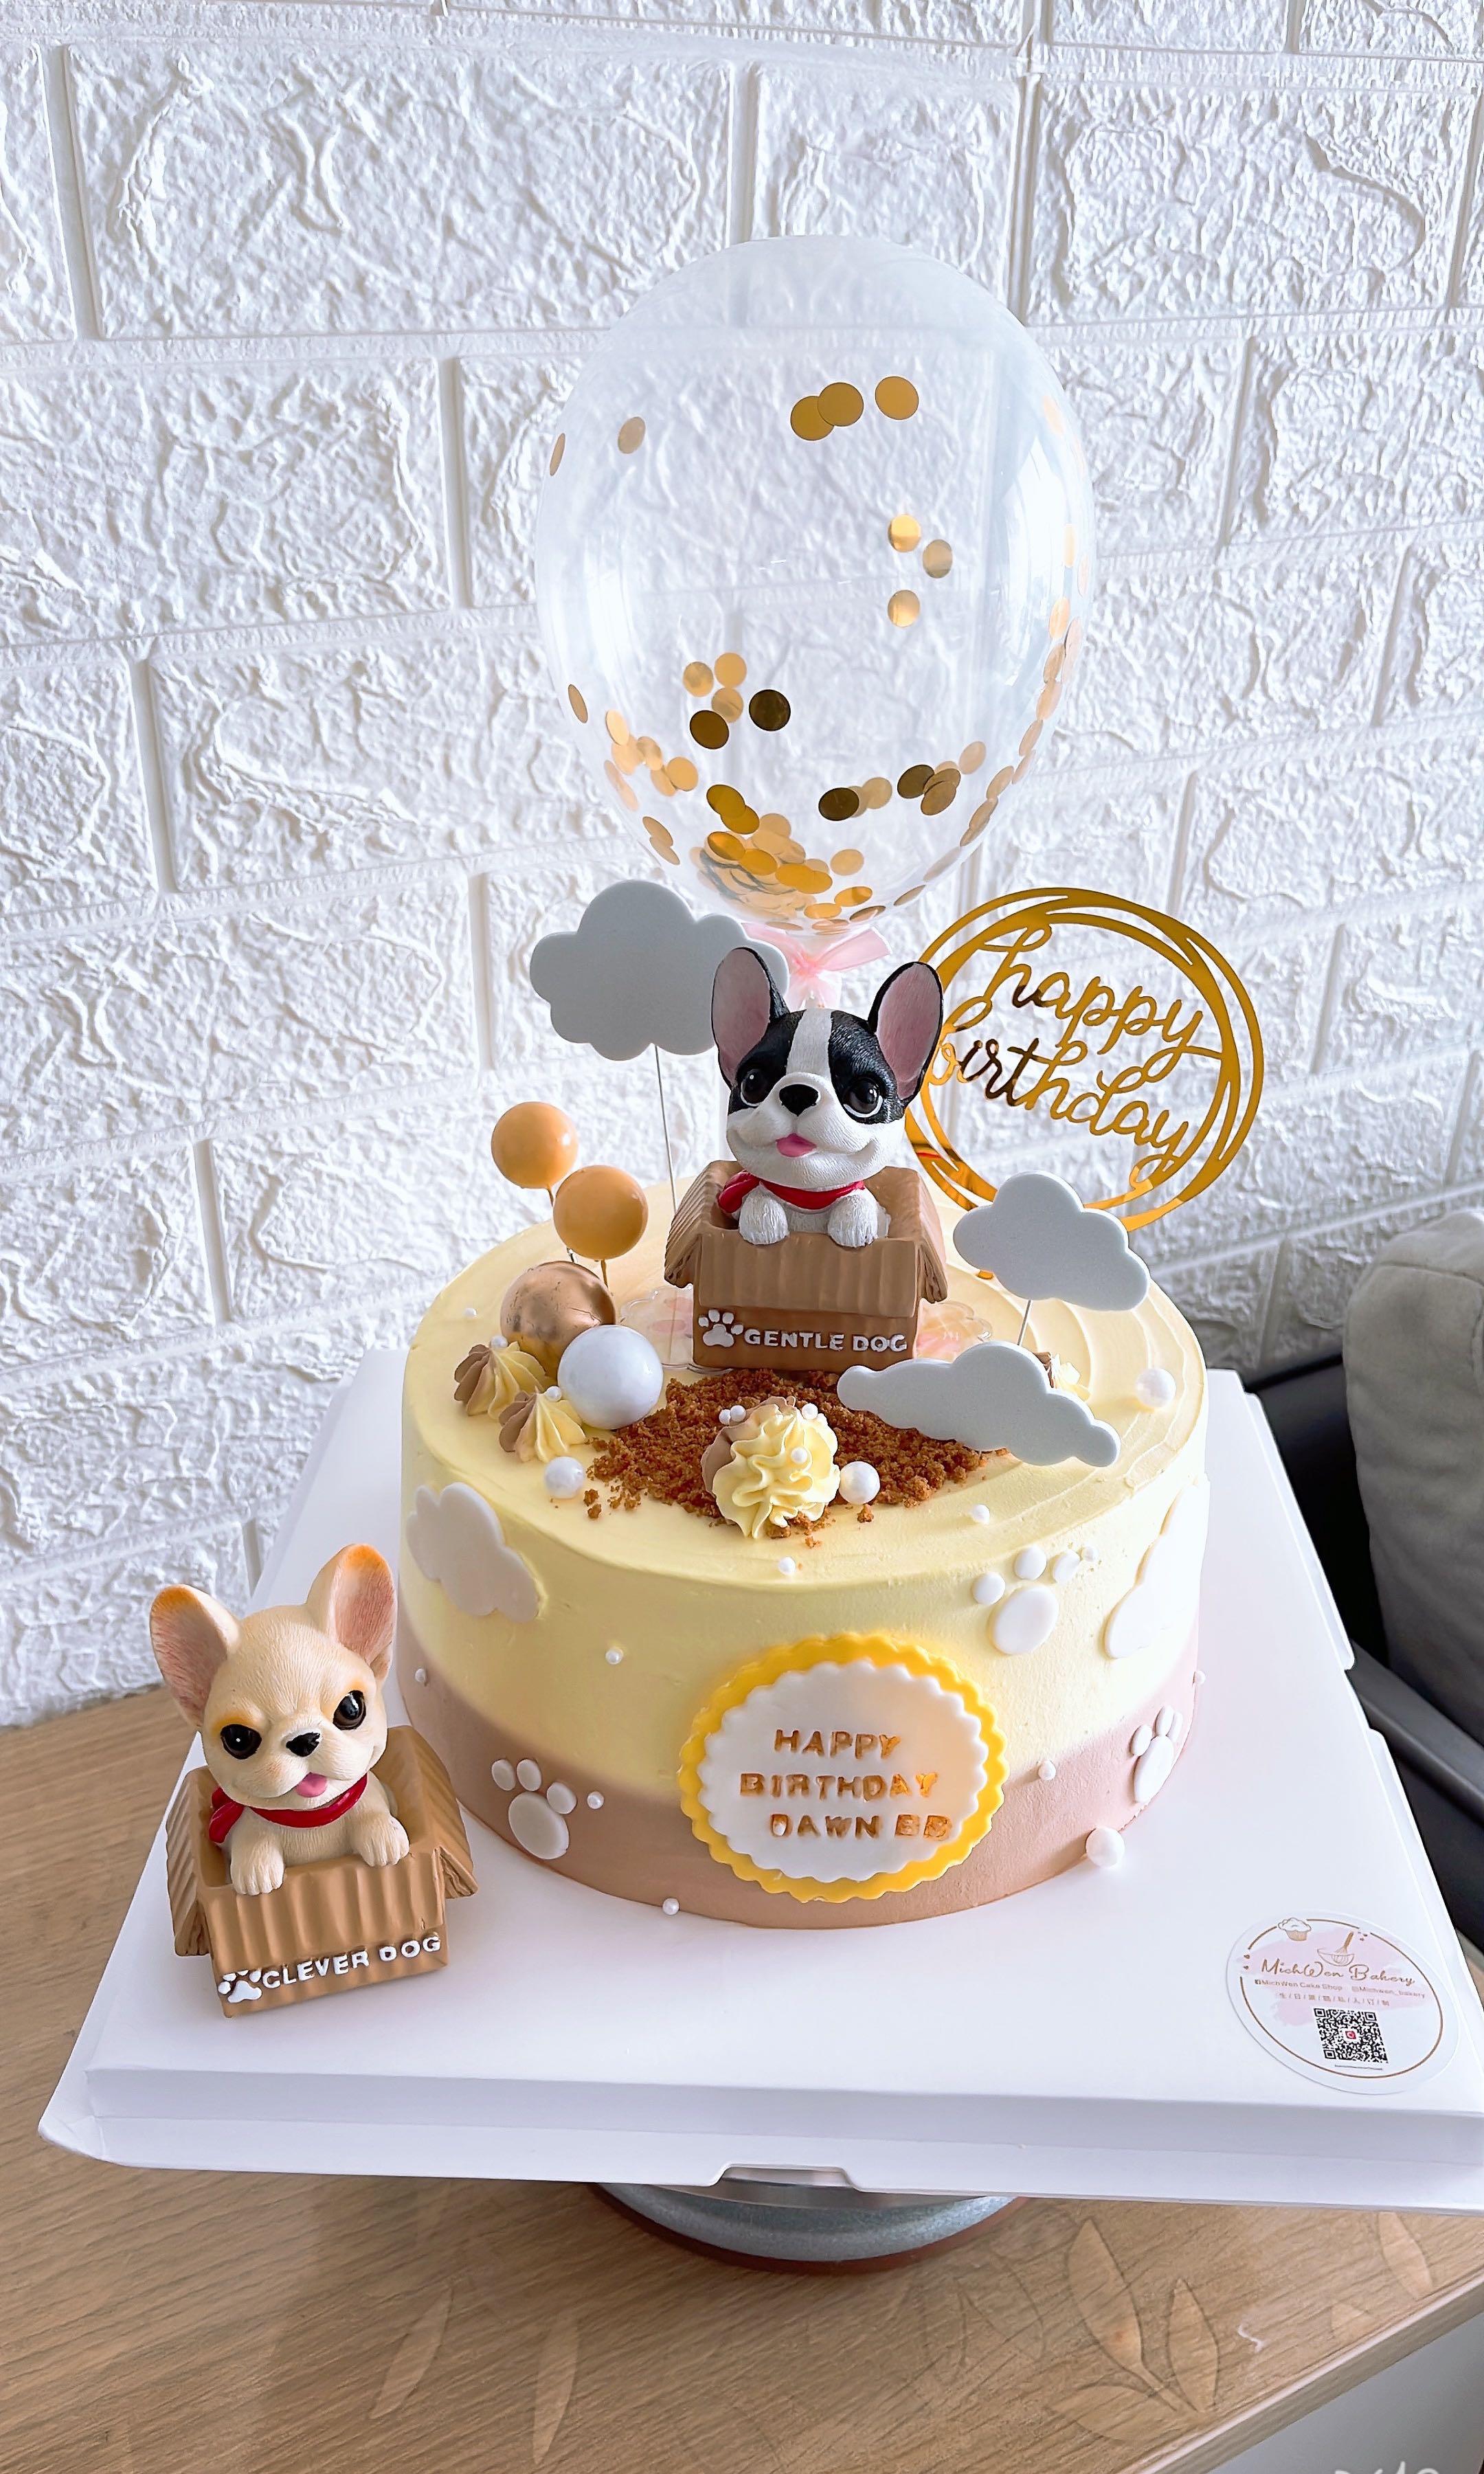 Puppy cake | Puppy cake, Dog cakes, Dog birthday cake